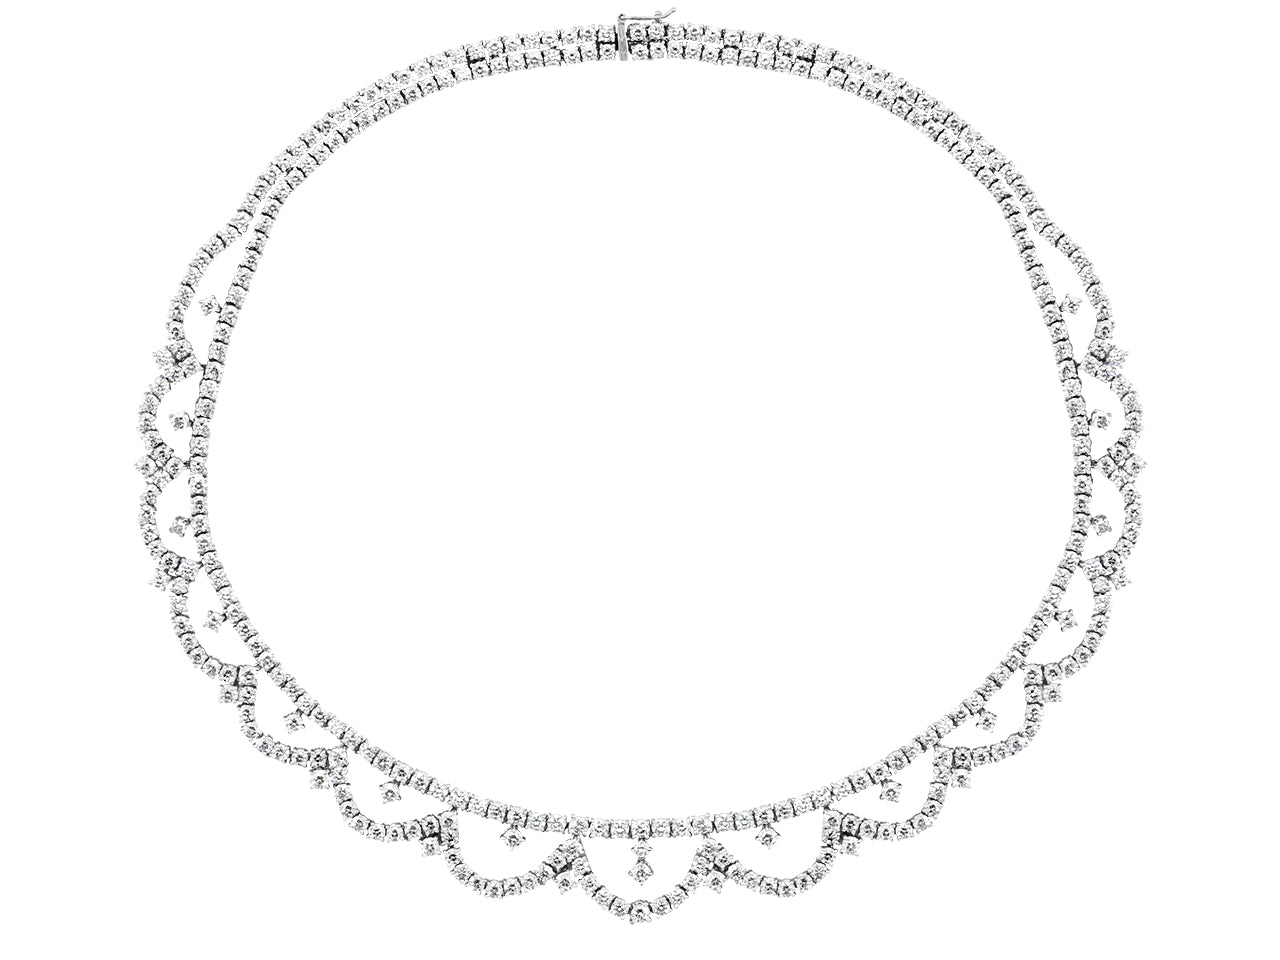 Piranesi Diamond Garland Necklace in 18K White Gold